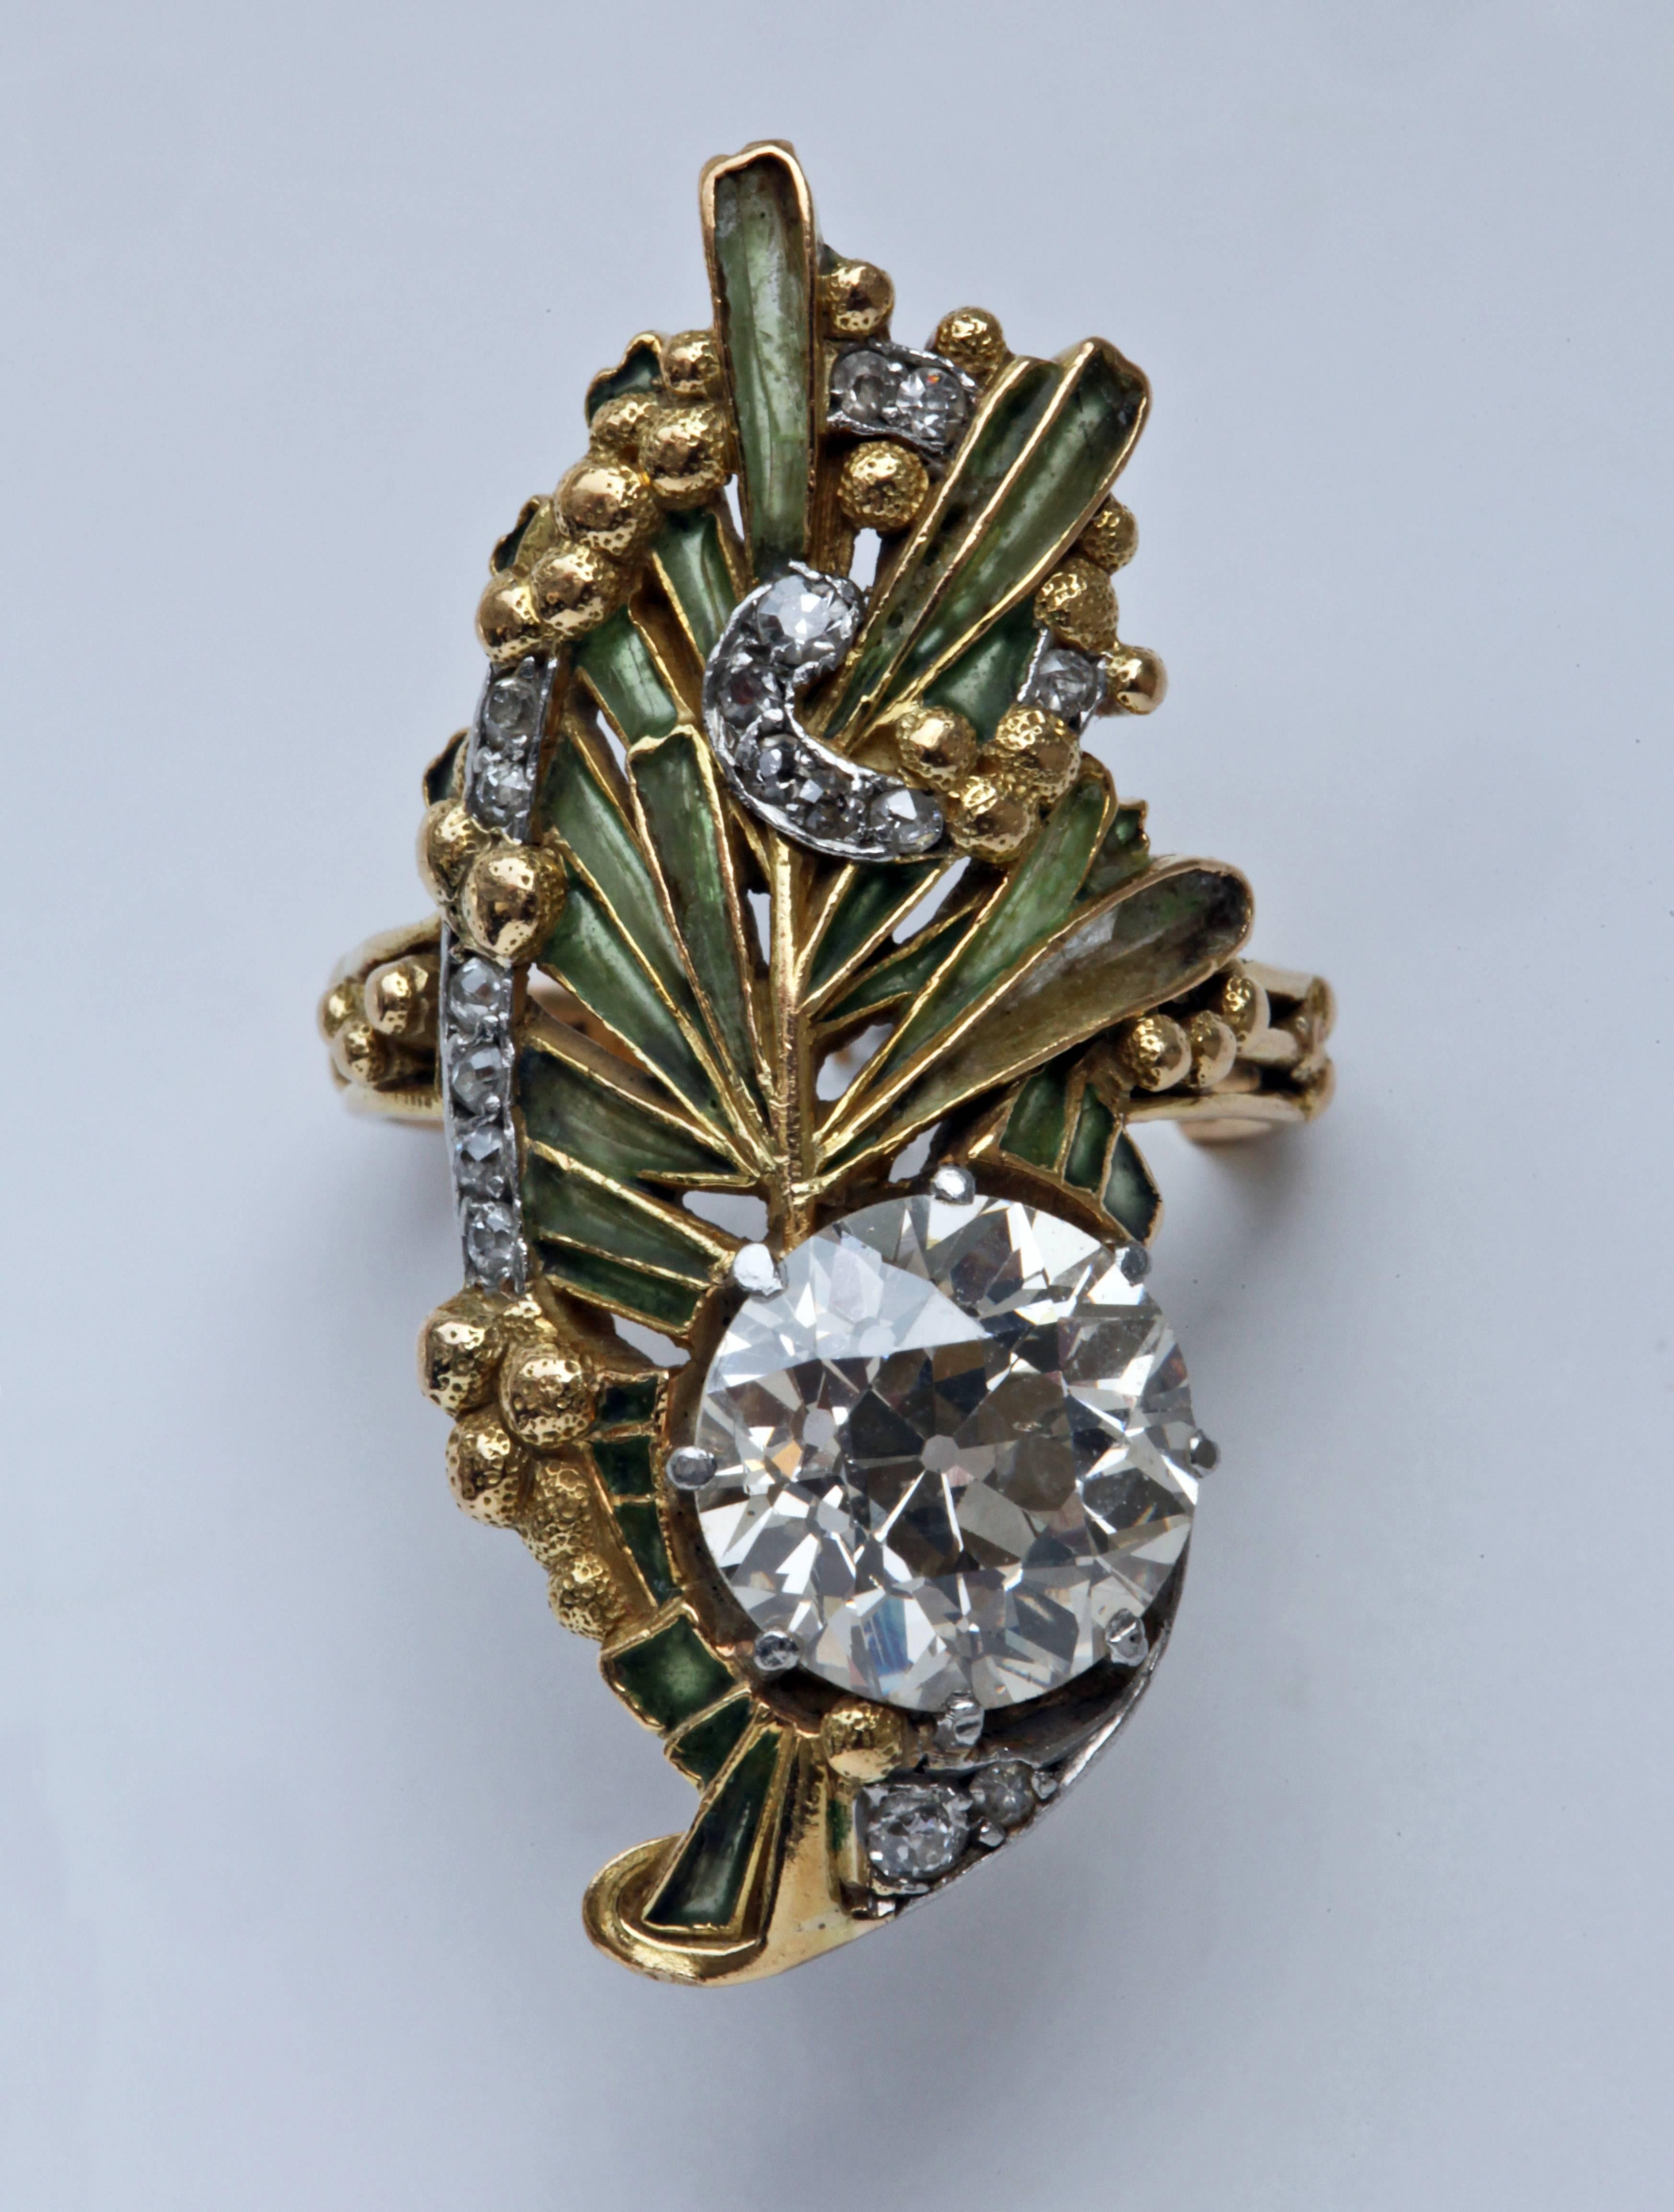 La conception et la fabrication extrêmement raffinées sont typiques des créations de René Lalique/Louis Aucoc.
Un superbe exemple de l'art le plus raffiné des joailliers parisiens des années 1900 en or, émail plique-à-jour et diamant.
Cet étonnant